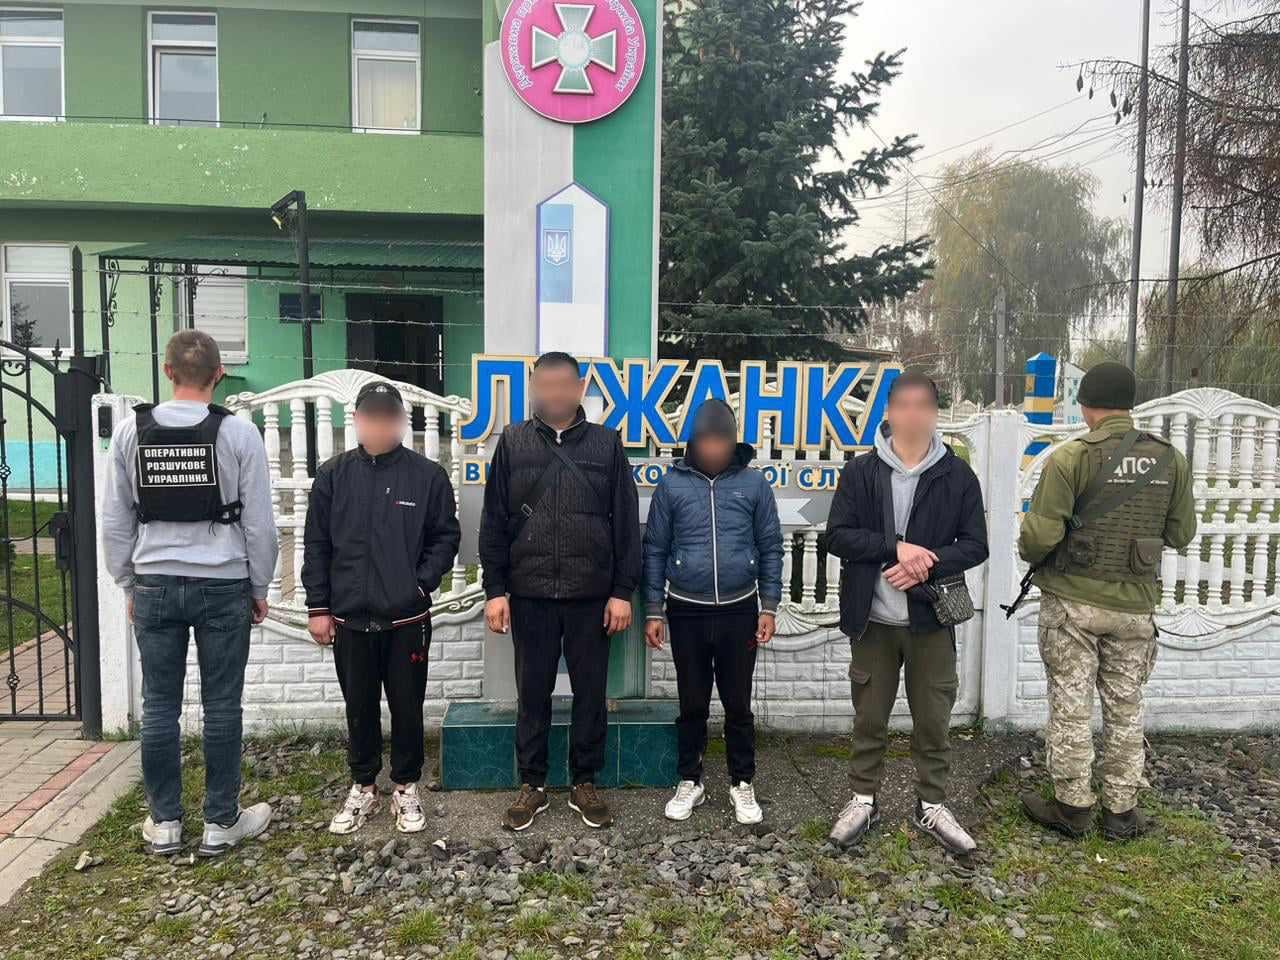 Закарпатець залучив неповнолітнього юнака до переправлення осіб через українсько - угорський кордон